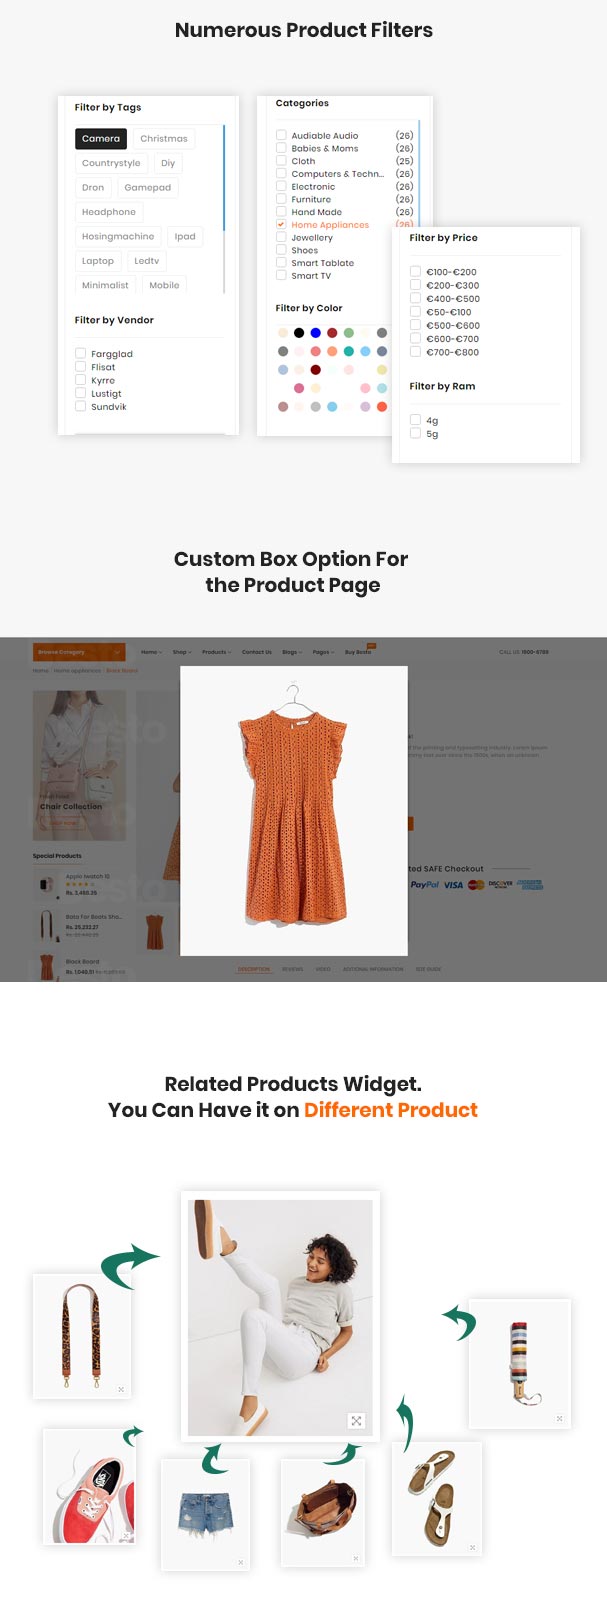 Besto – The Electronics & Clothing Fashion Multipurpose eCommerce Shopify Theme